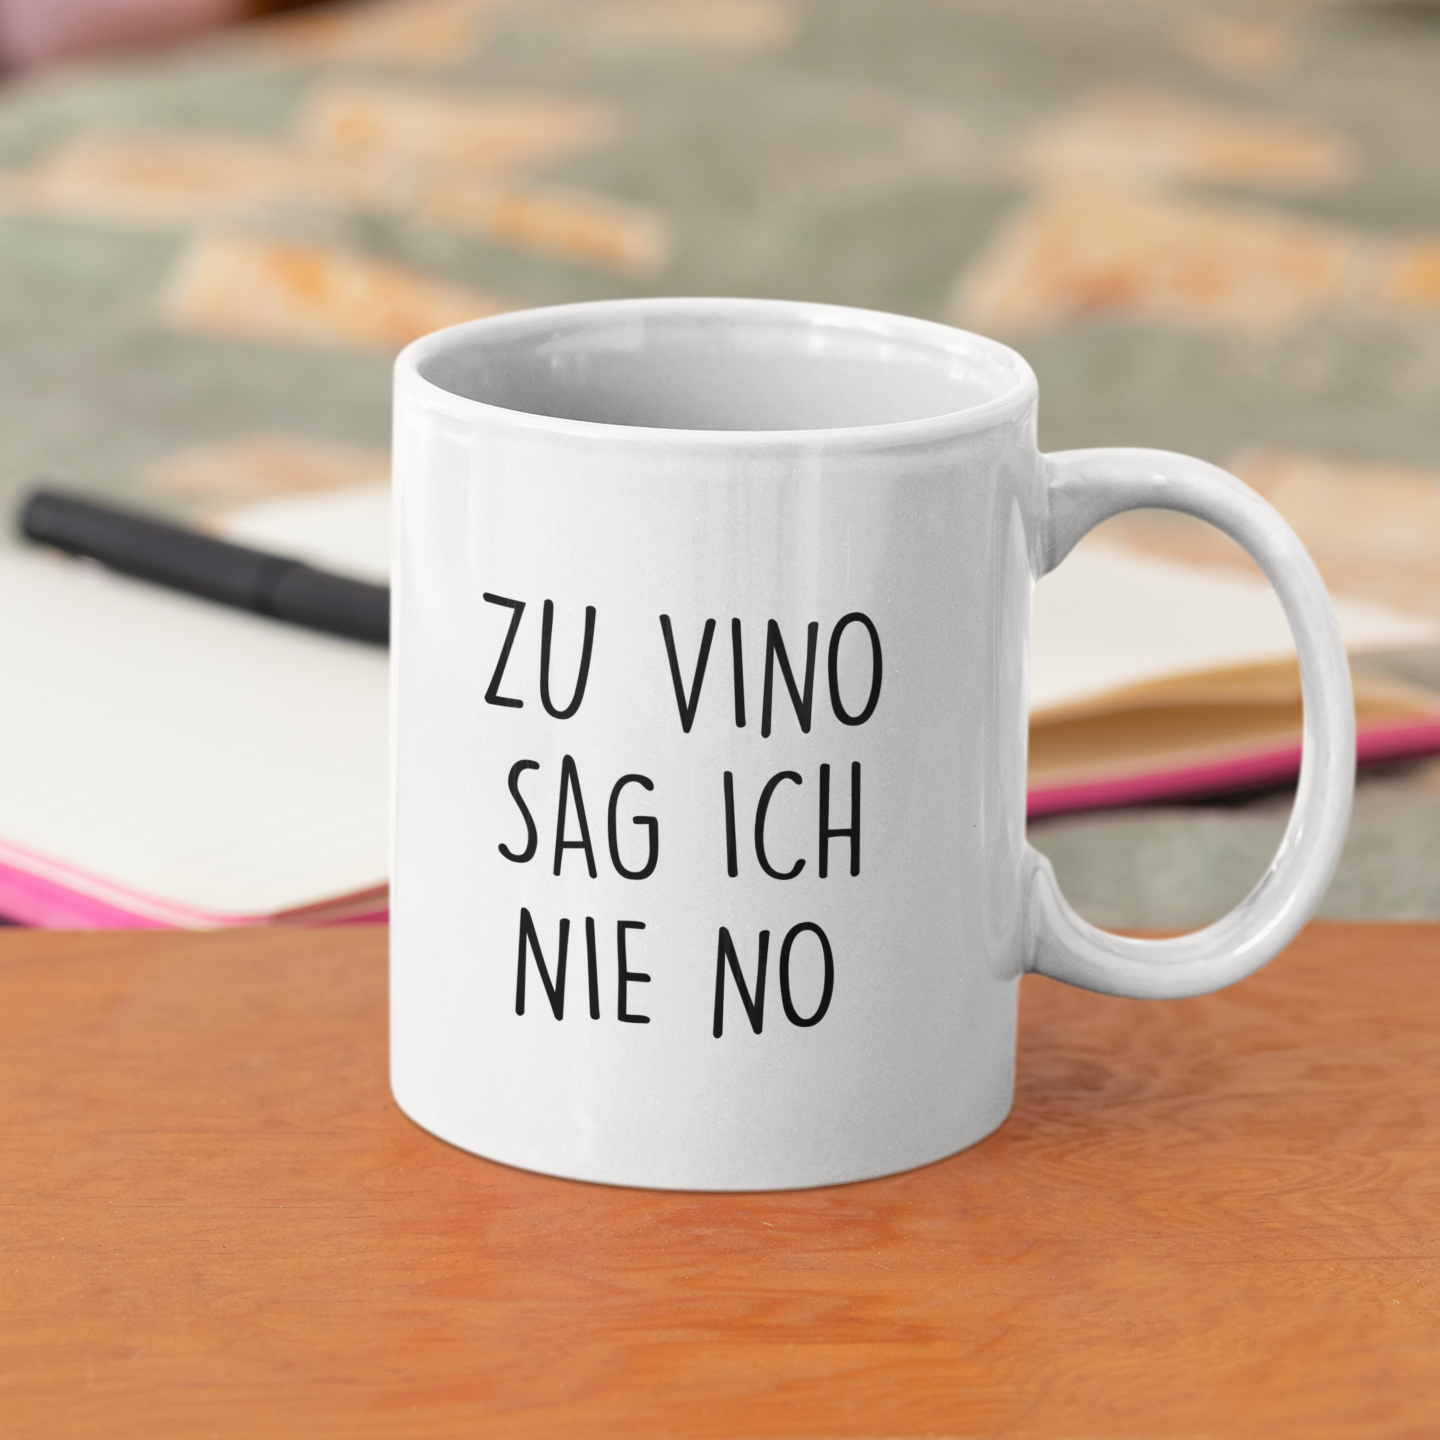 Zu Vino sag ich nie no - Tasse - Weinspirits